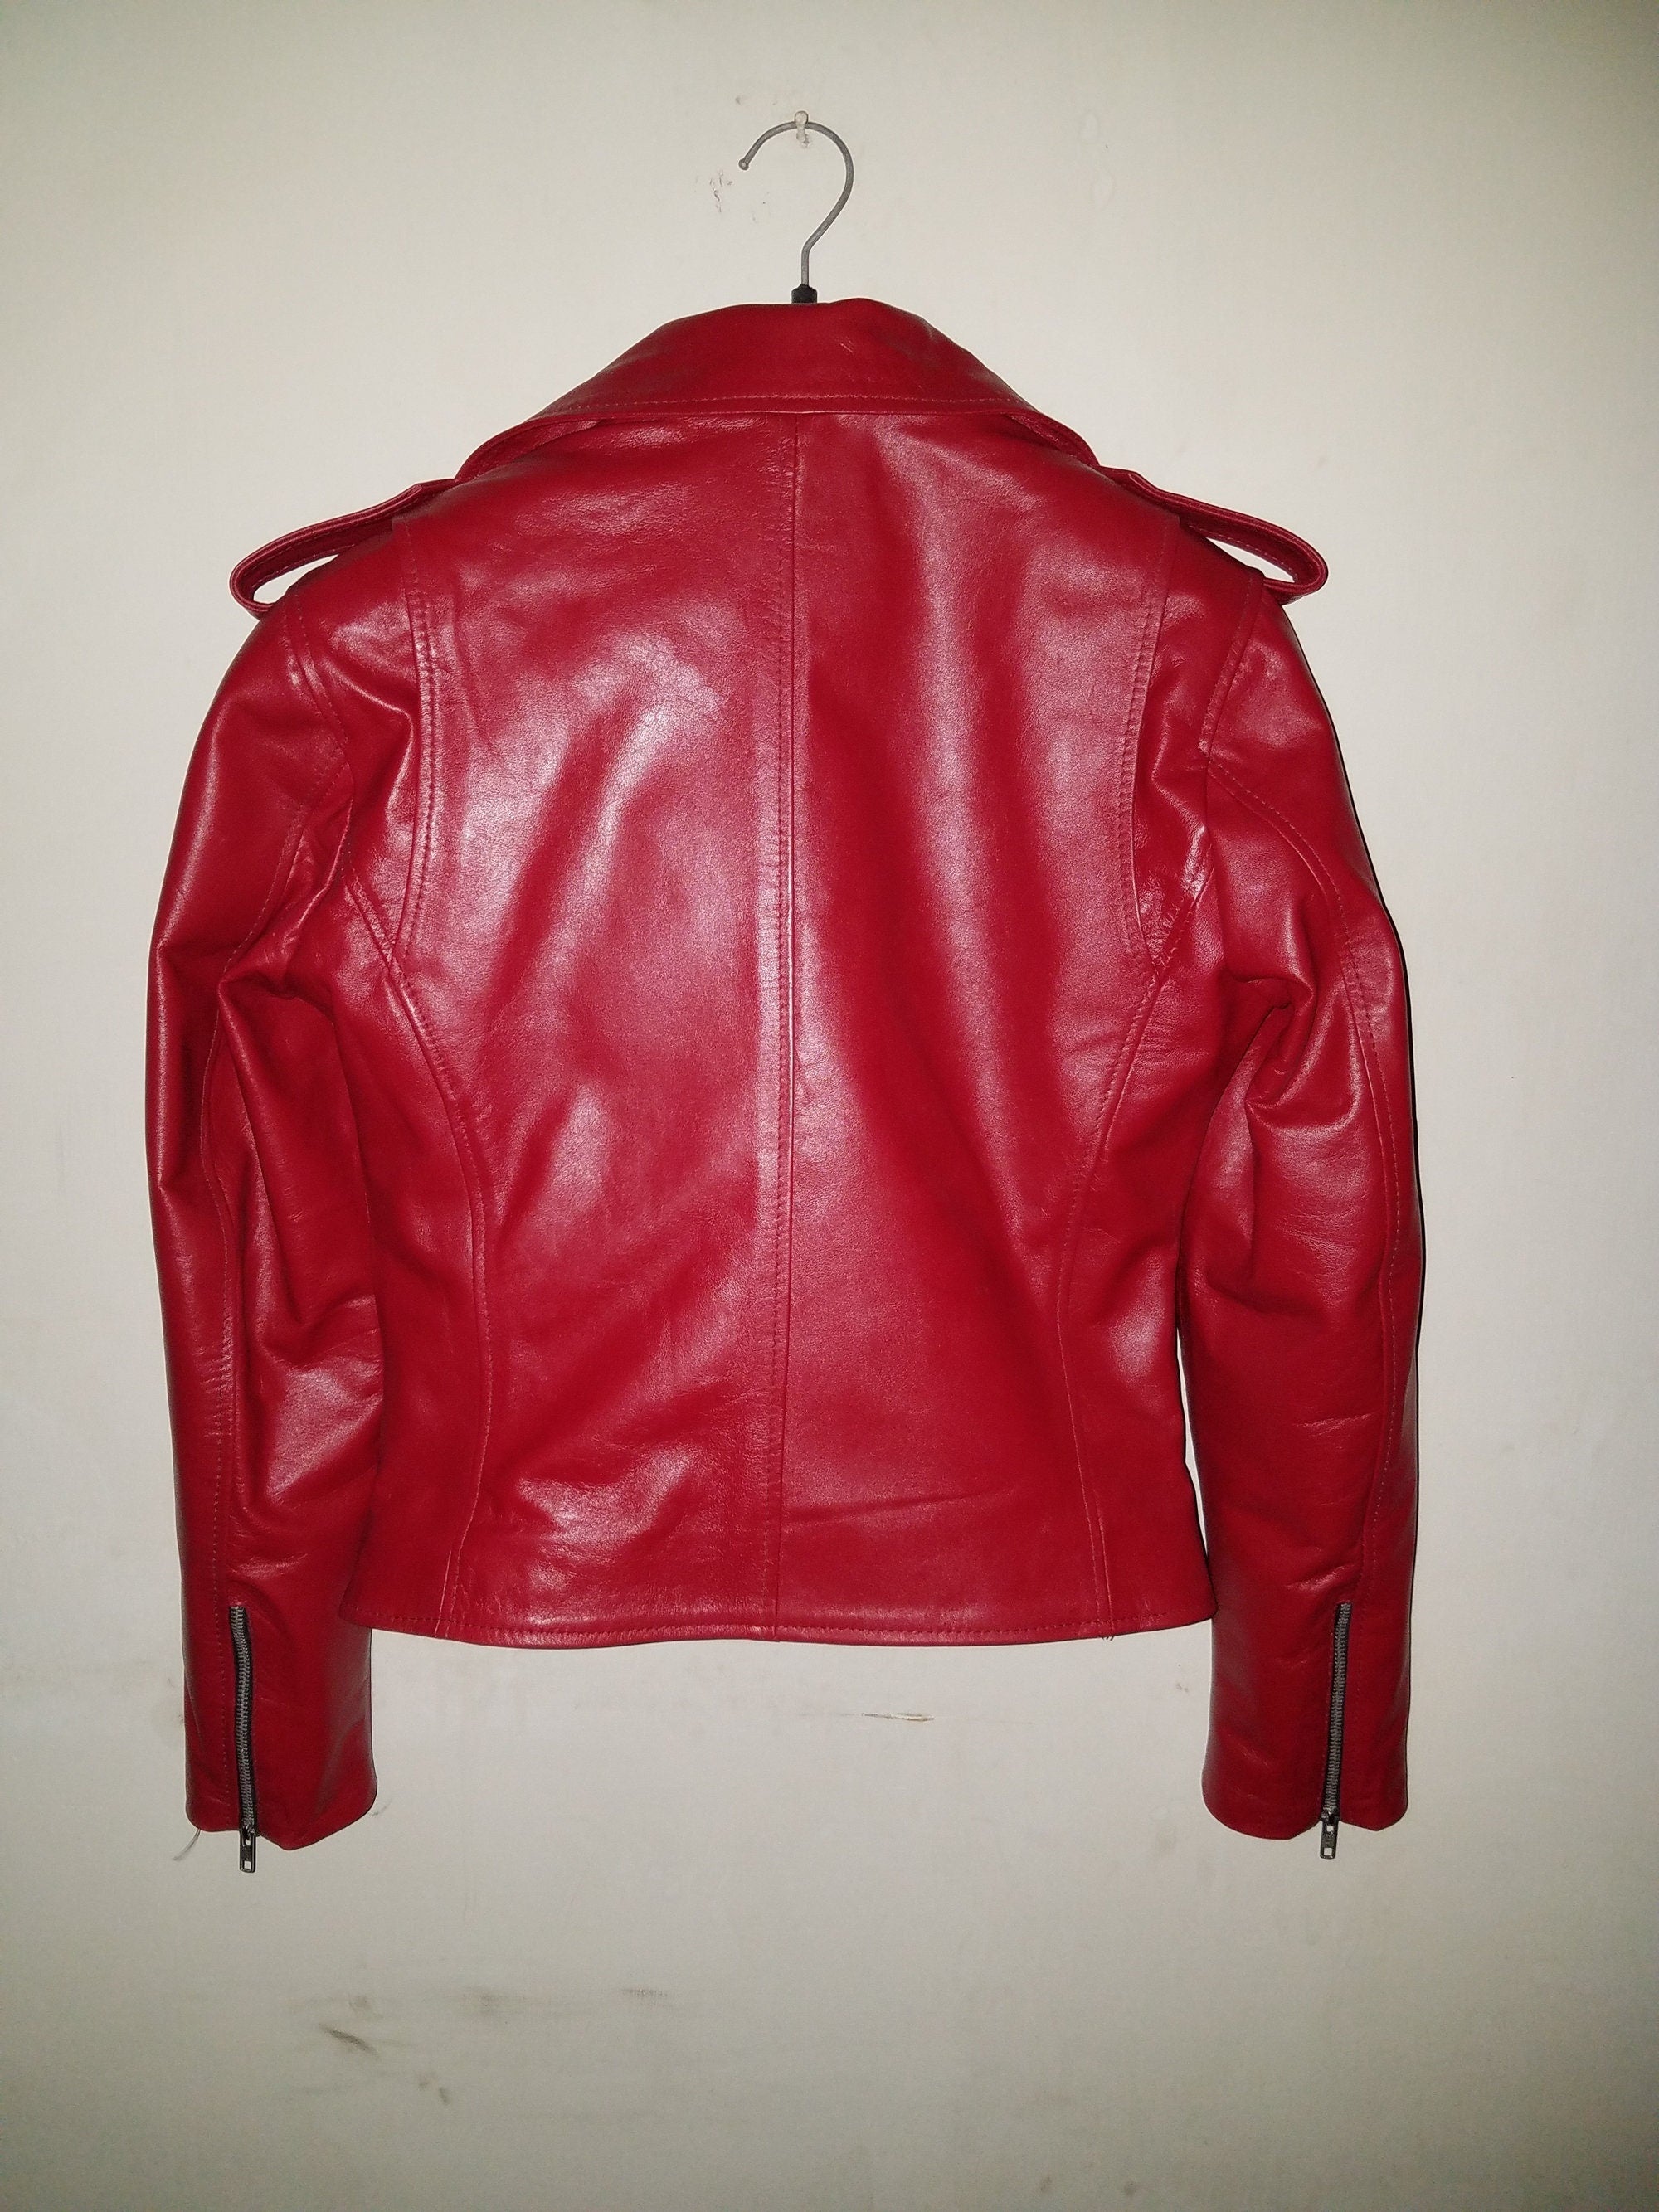 Red Biker Leather Jacket Women